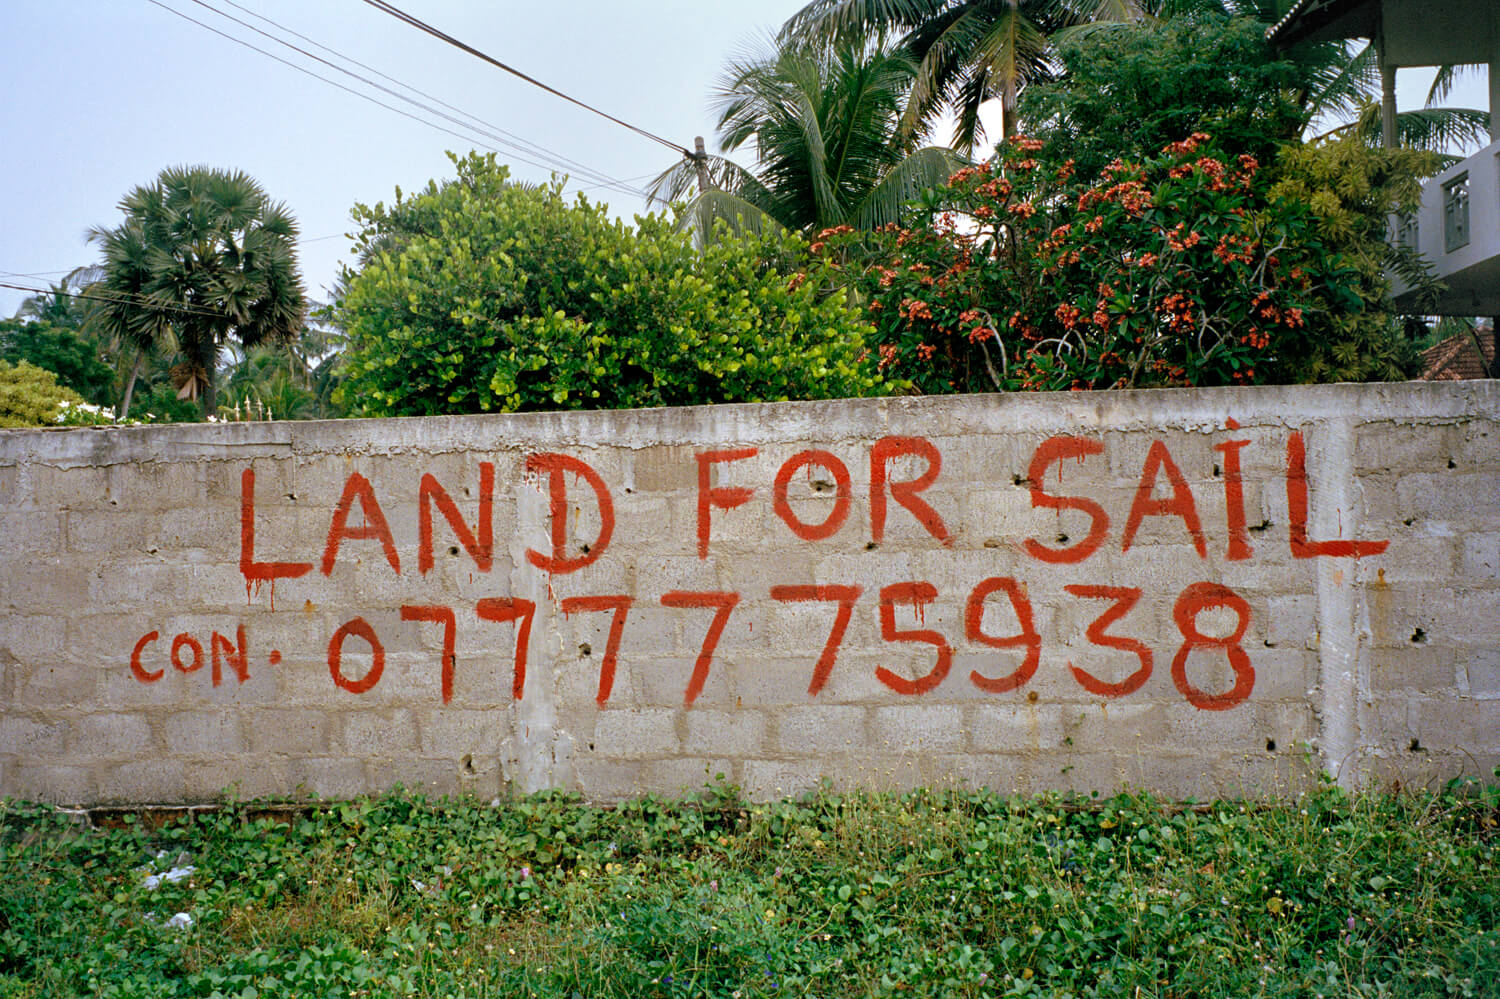 Found Elkoury, Land for Sail, Sri Lanka, 2012